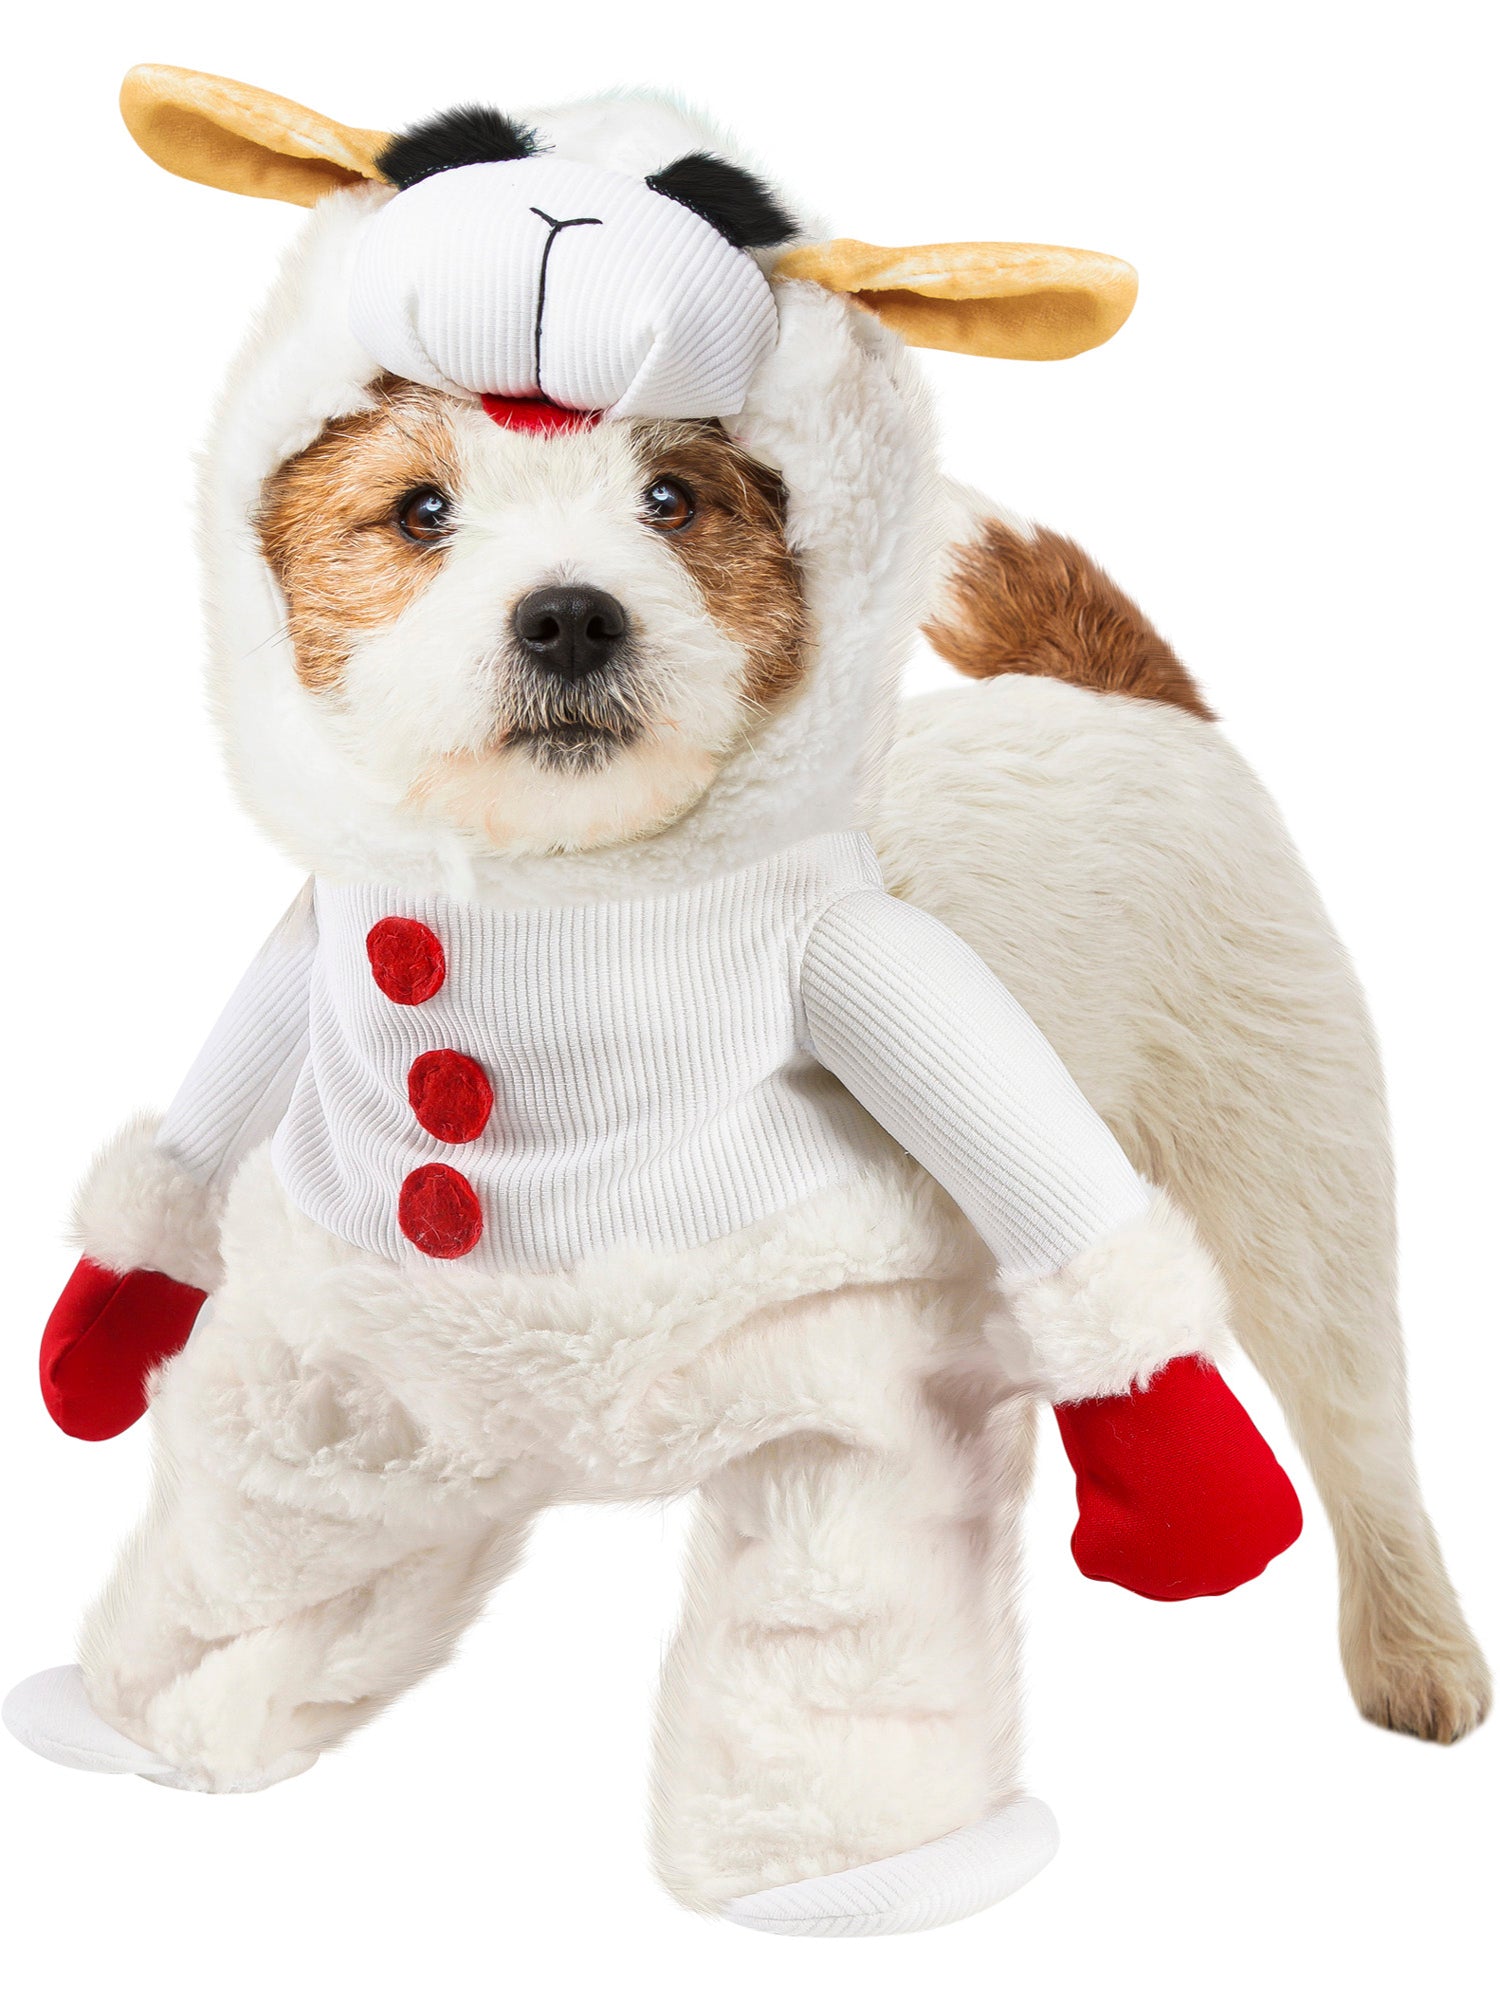 Lamb Chop Pet Costume - costumes.com